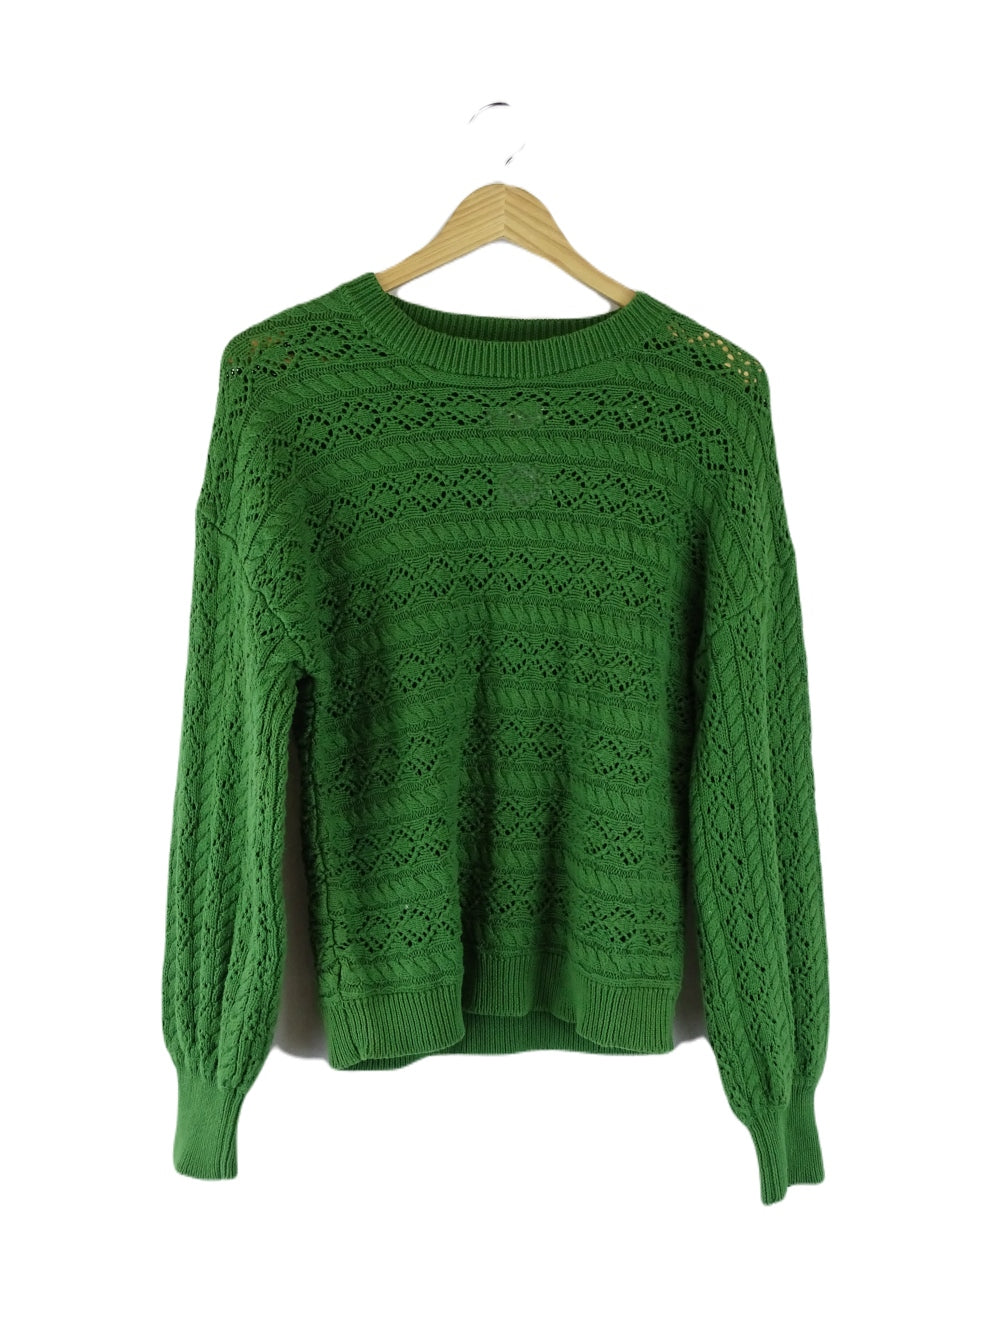 Iris Mazi Green Knit Jumper L